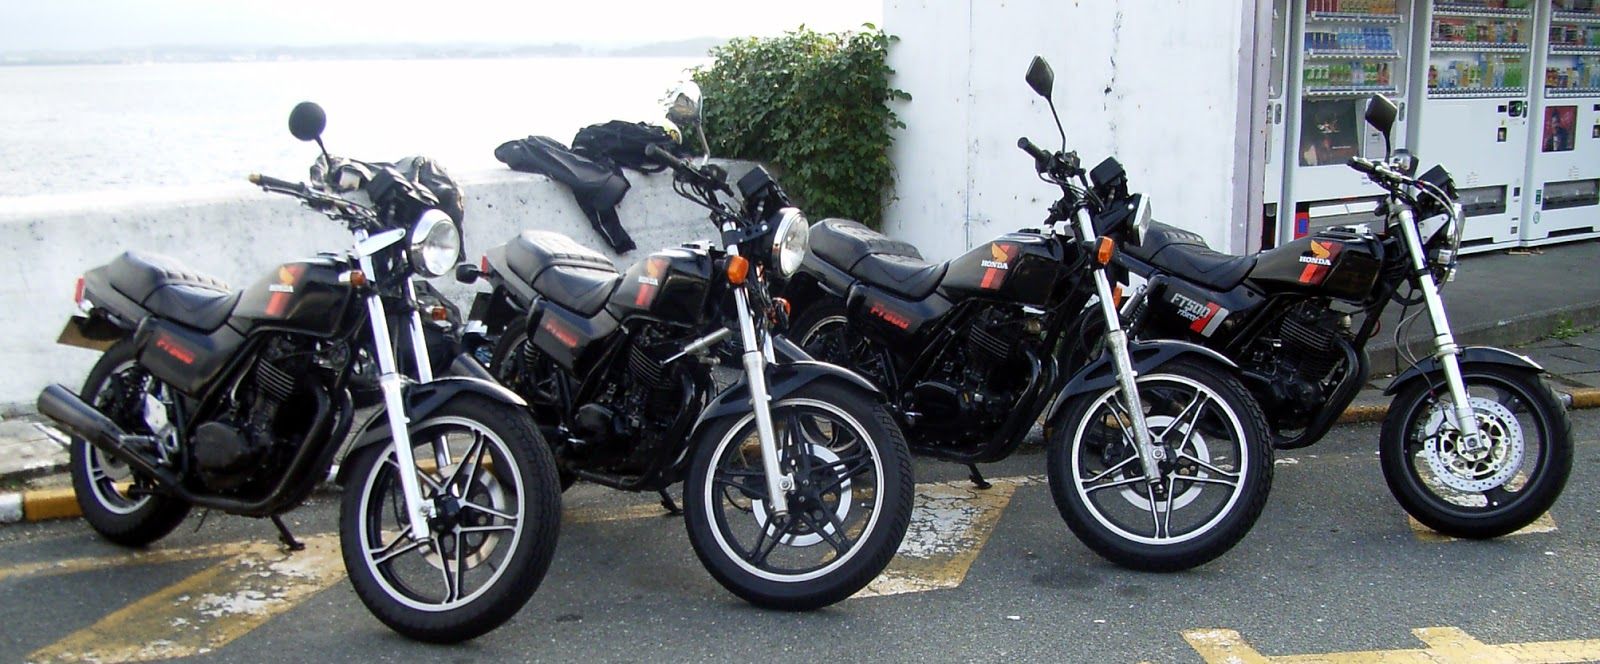 motorcycles.jpg